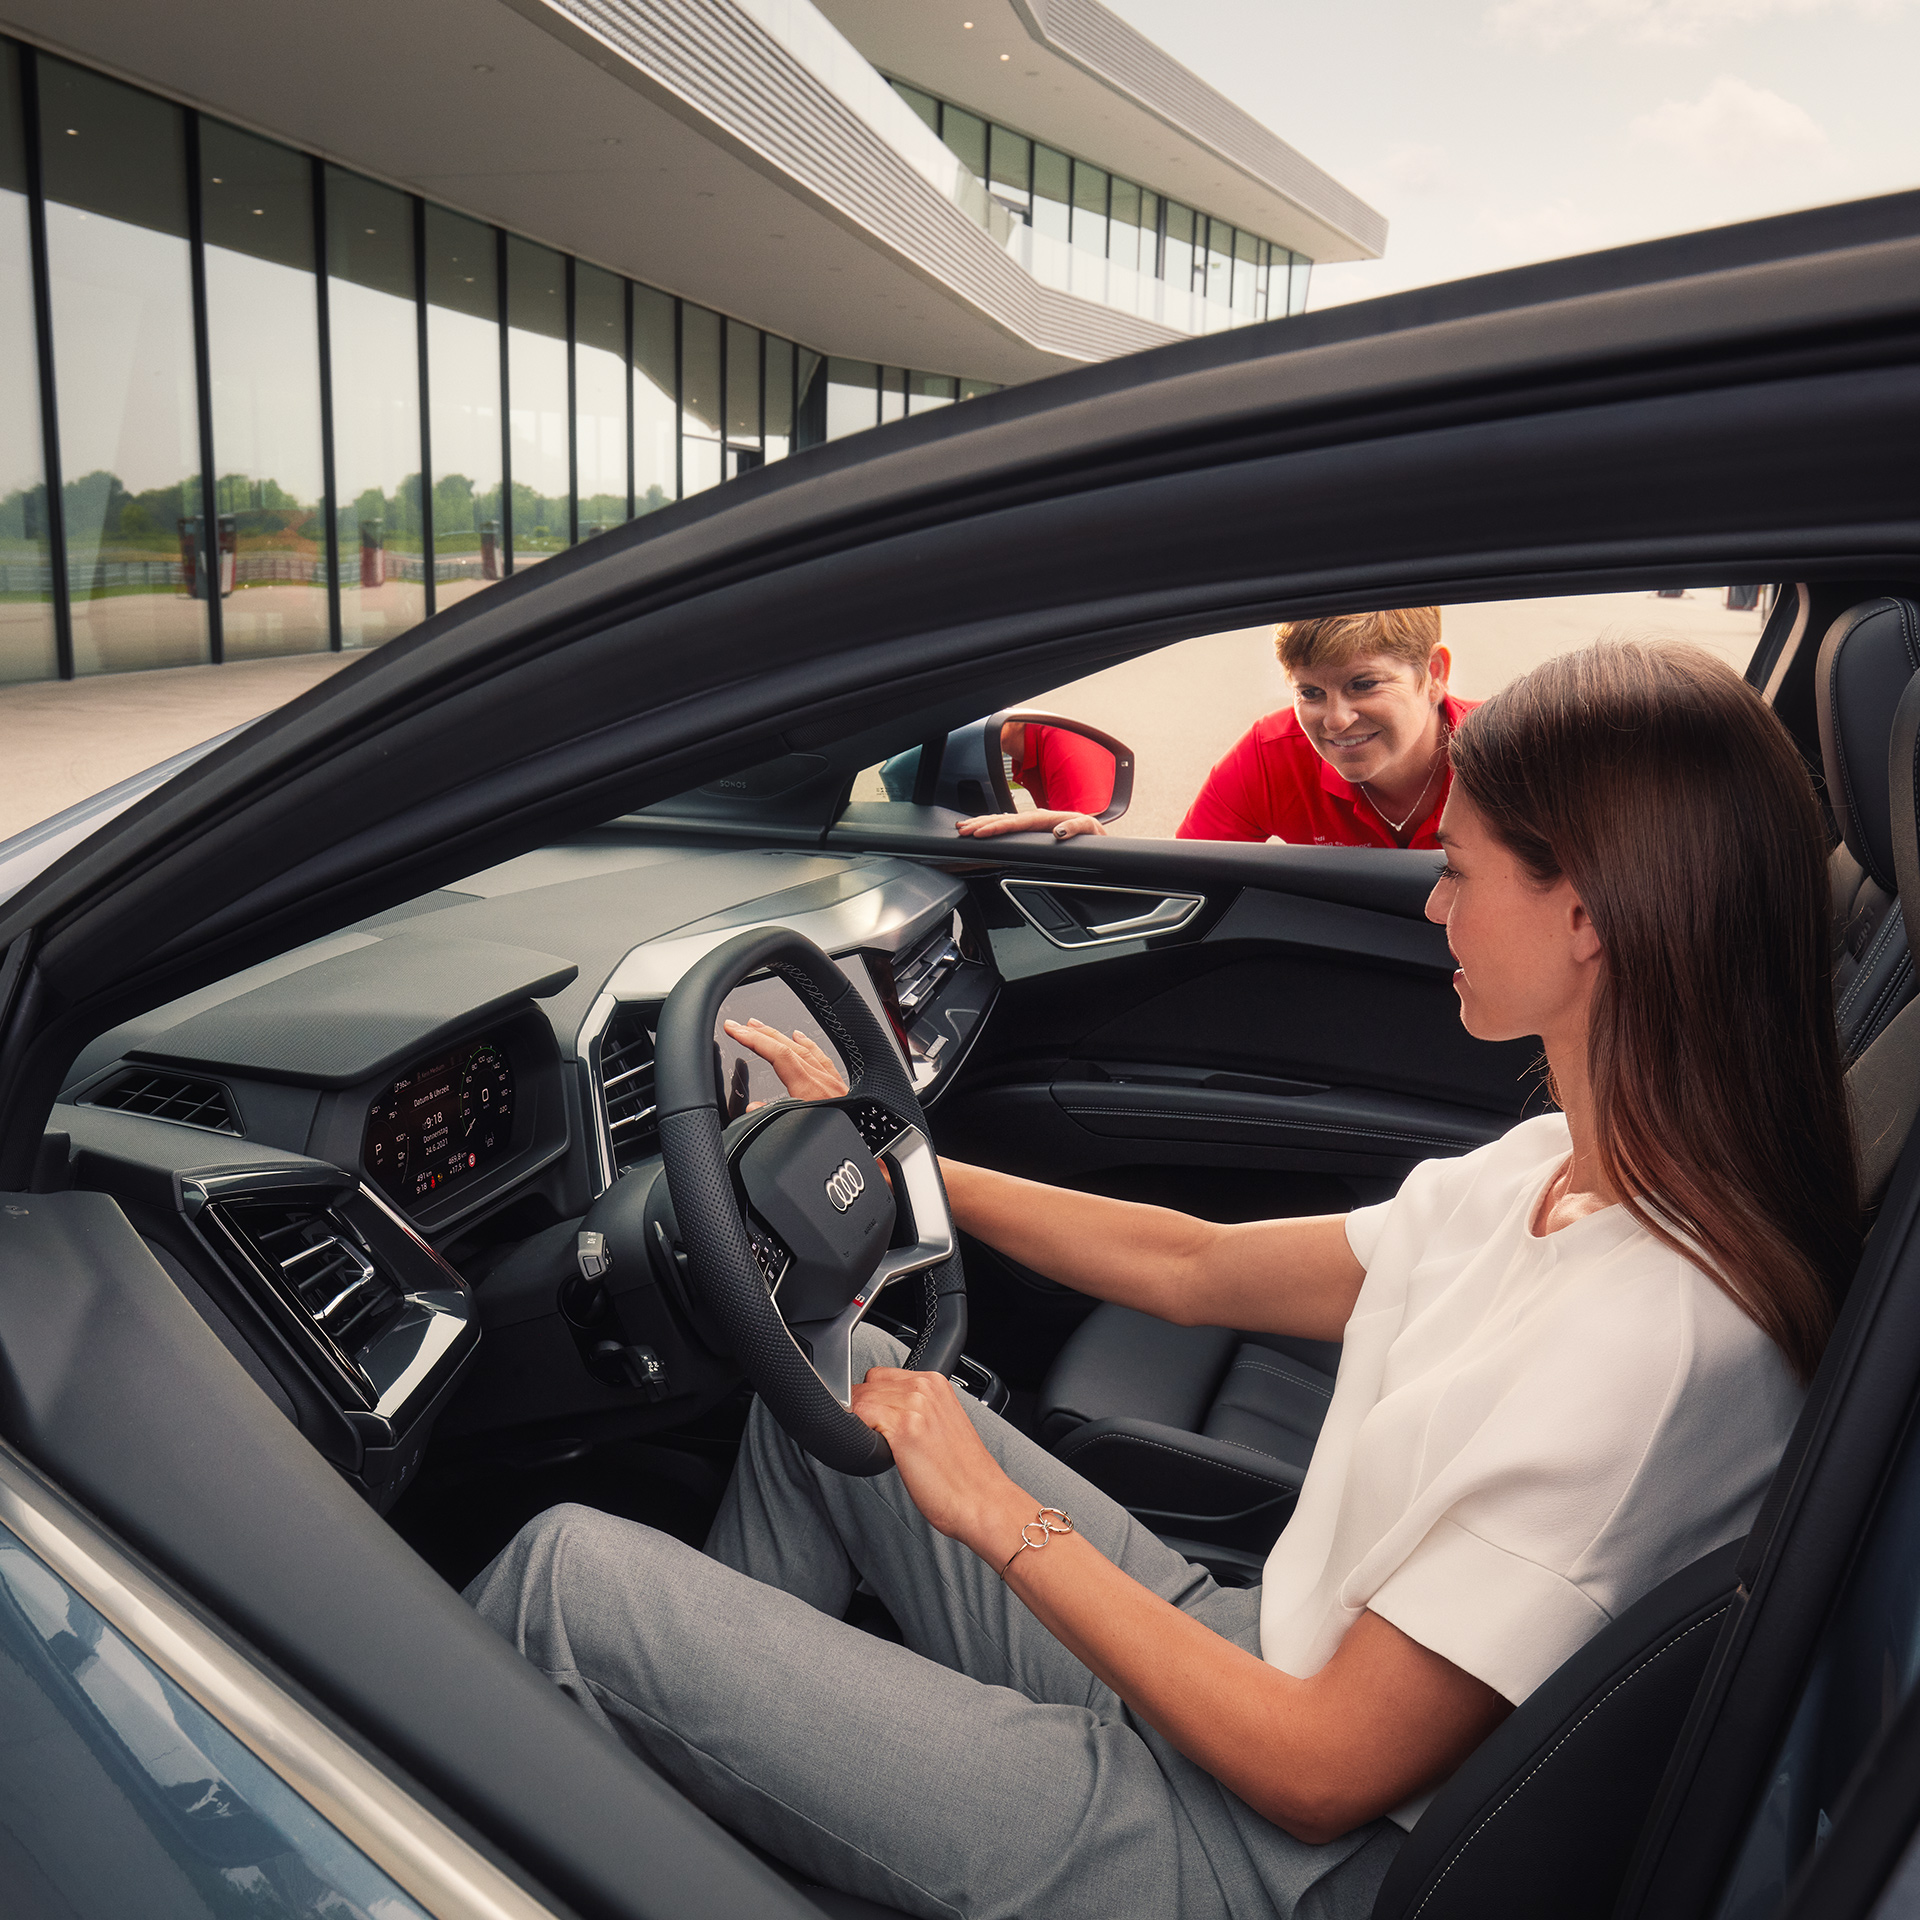 Frau mit dunklen langen Haarensitzt in einem Audi Modell, auf der Beifahrerseite schaut eine Frau in rotem T-Shirt durch das Fenster und erklärt das Fahrzeug